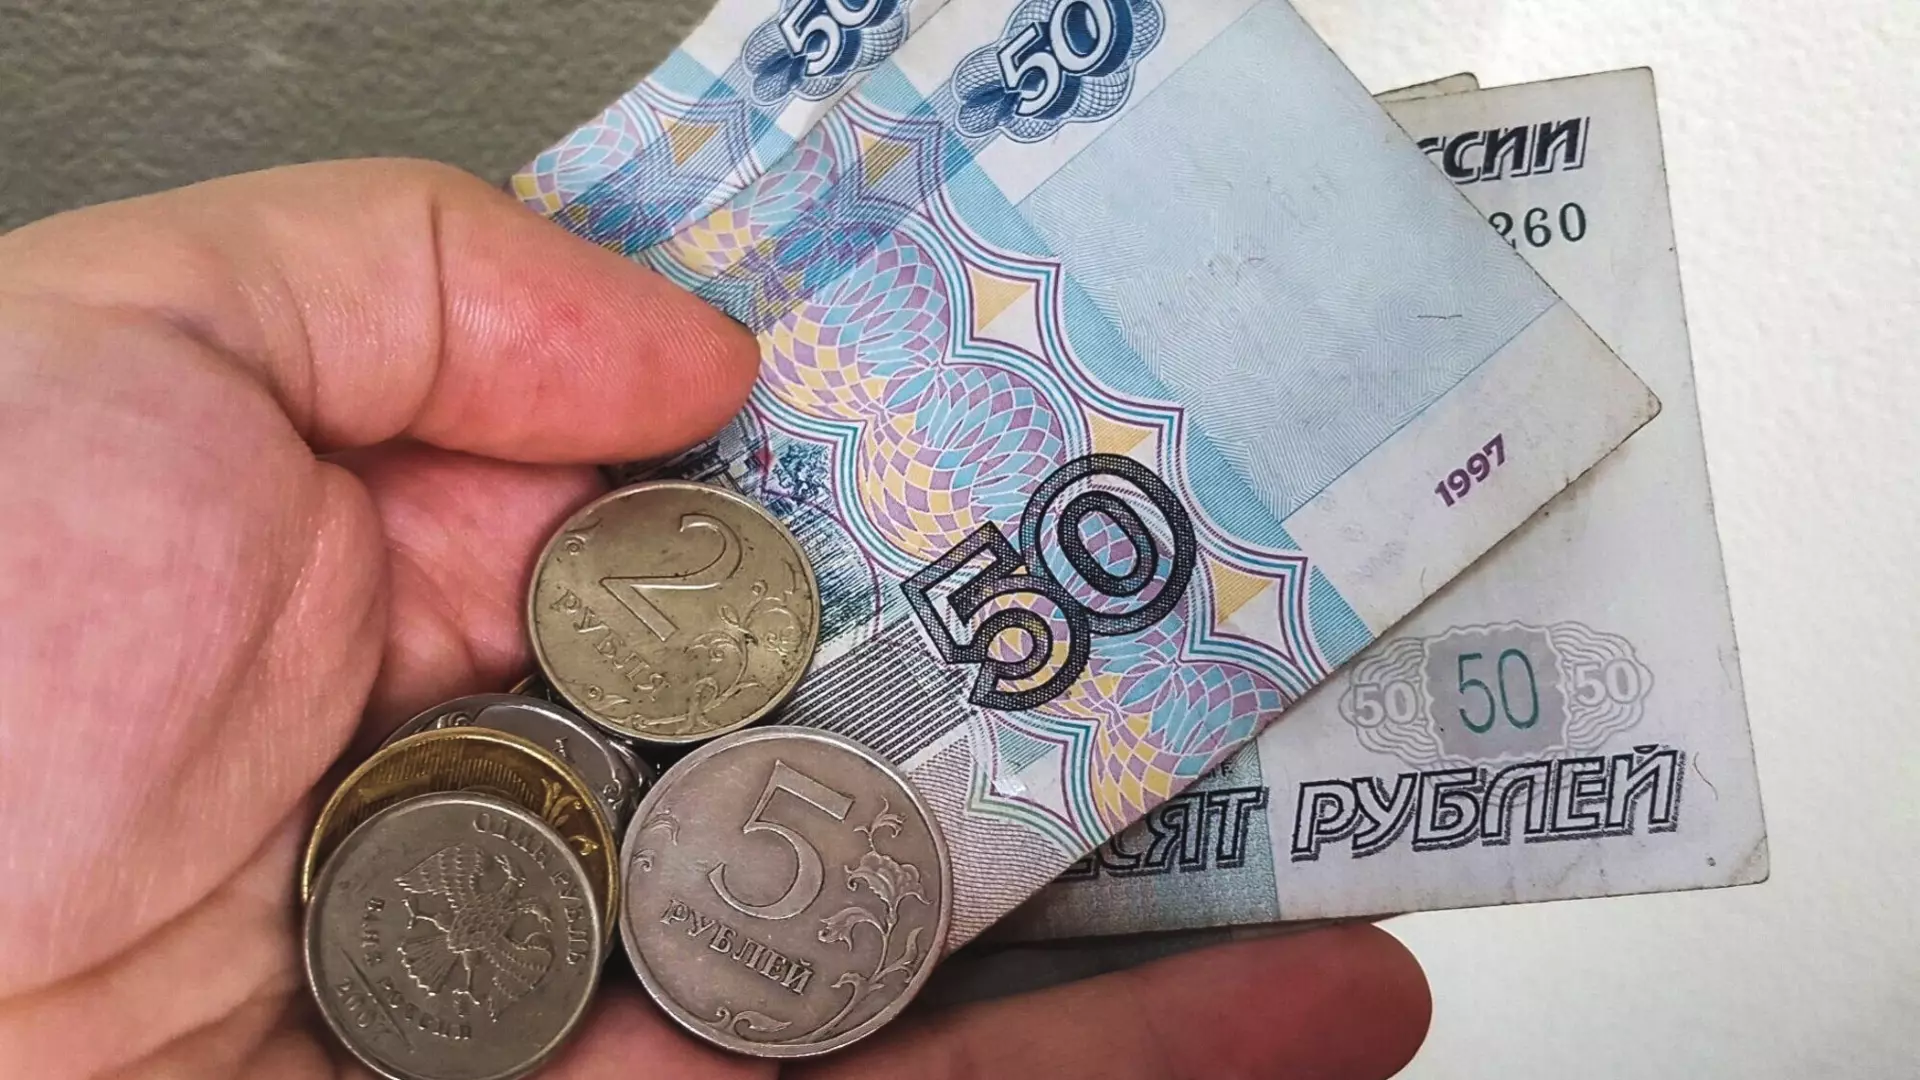 Оренбург находится в зоне риска по просрочкам выплаты ипотеки.